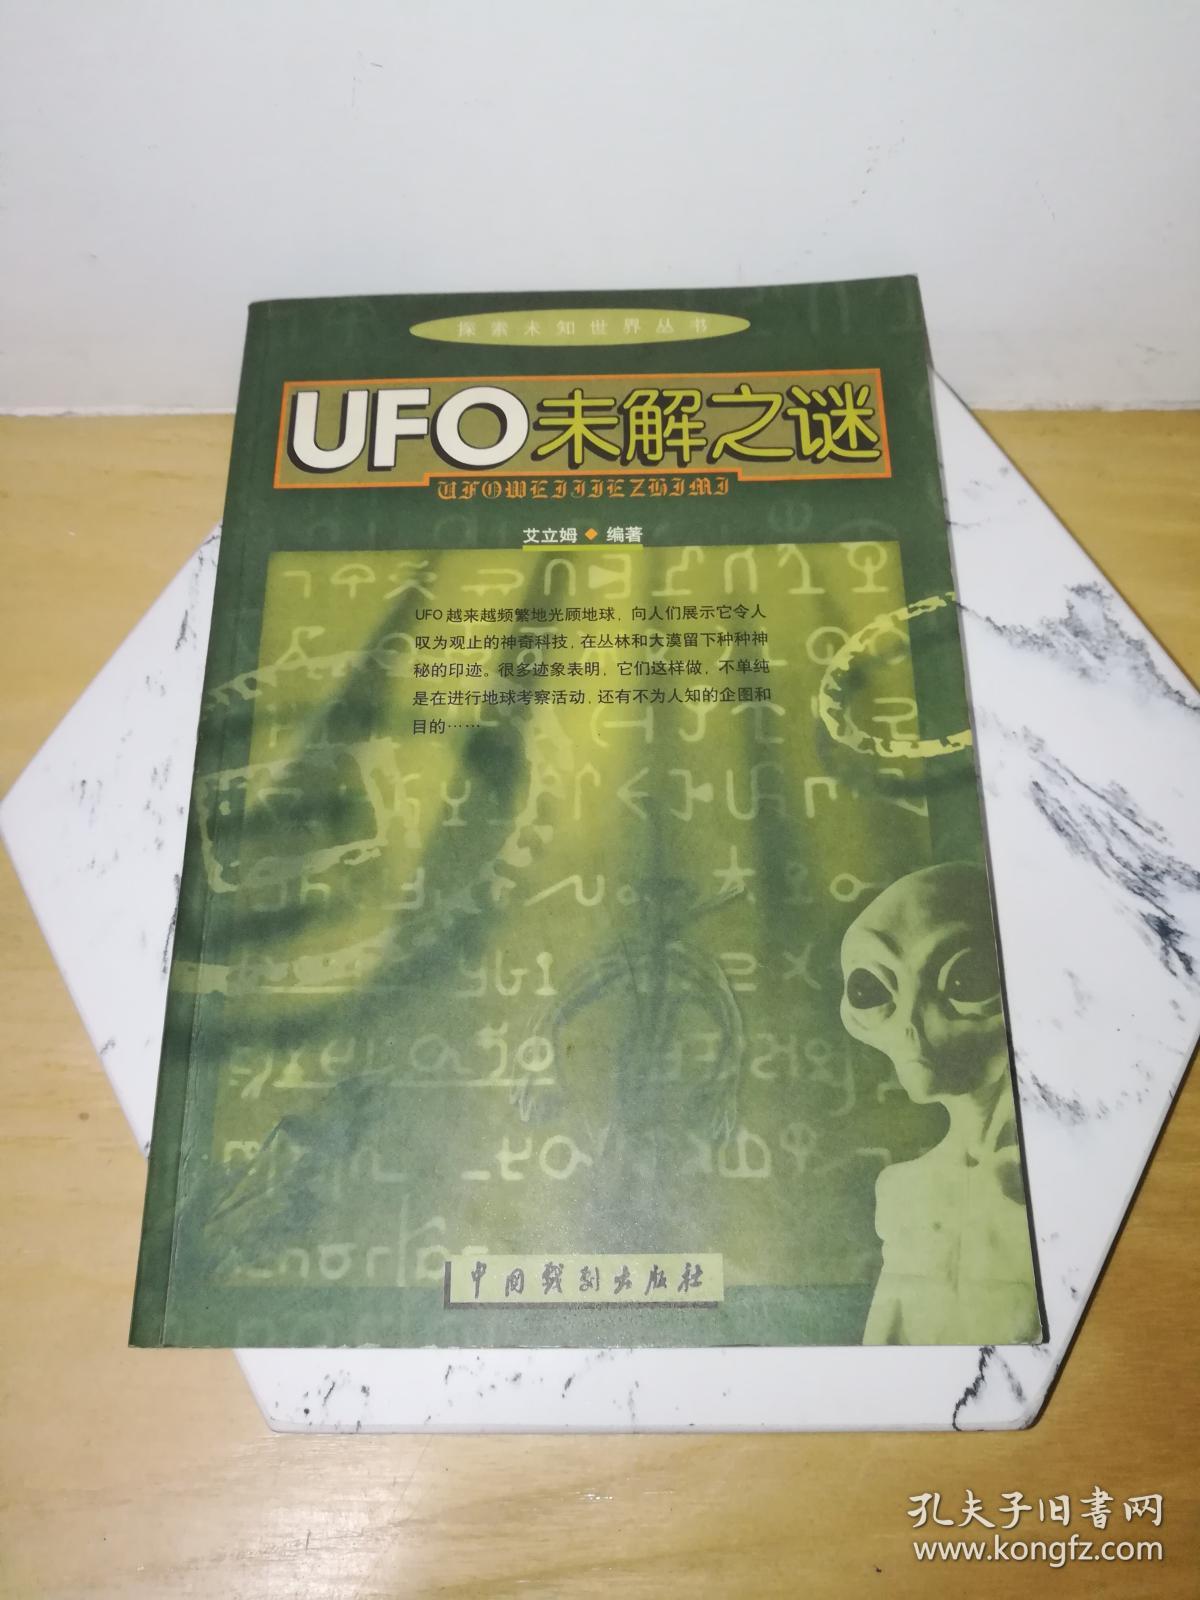 UFO未解之谜